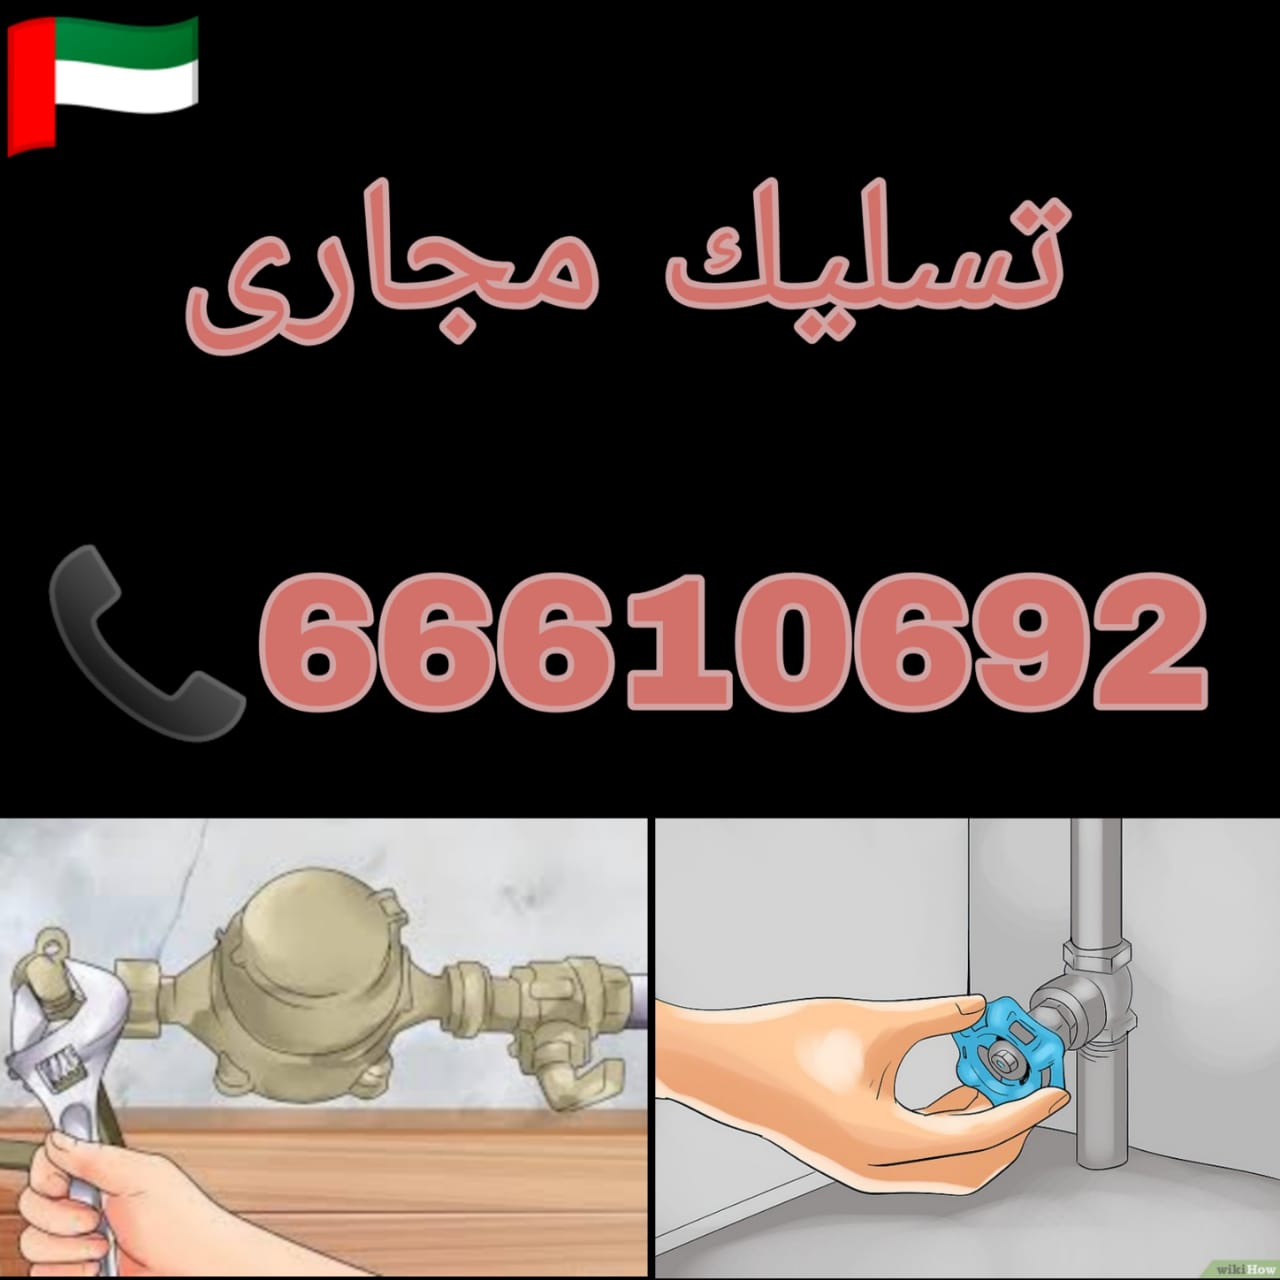 ماكينة تسليك مجاري / 66610692 / صيانة وتركيب فني صحي الكويت